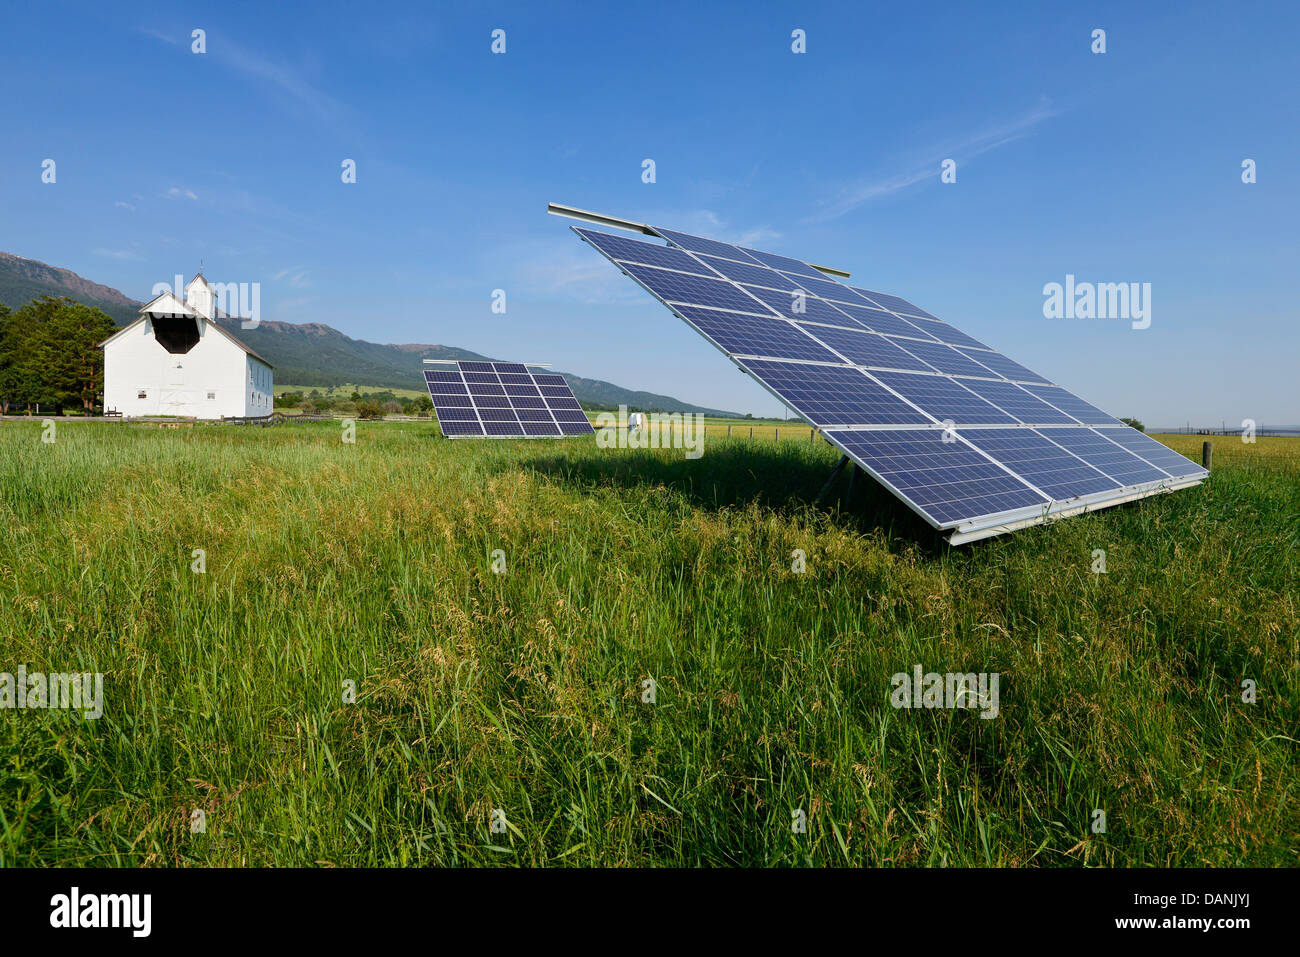 Des panneaux solaires sur une ferme dans l'Oregon est Wallowa Valley. Banque D'Images